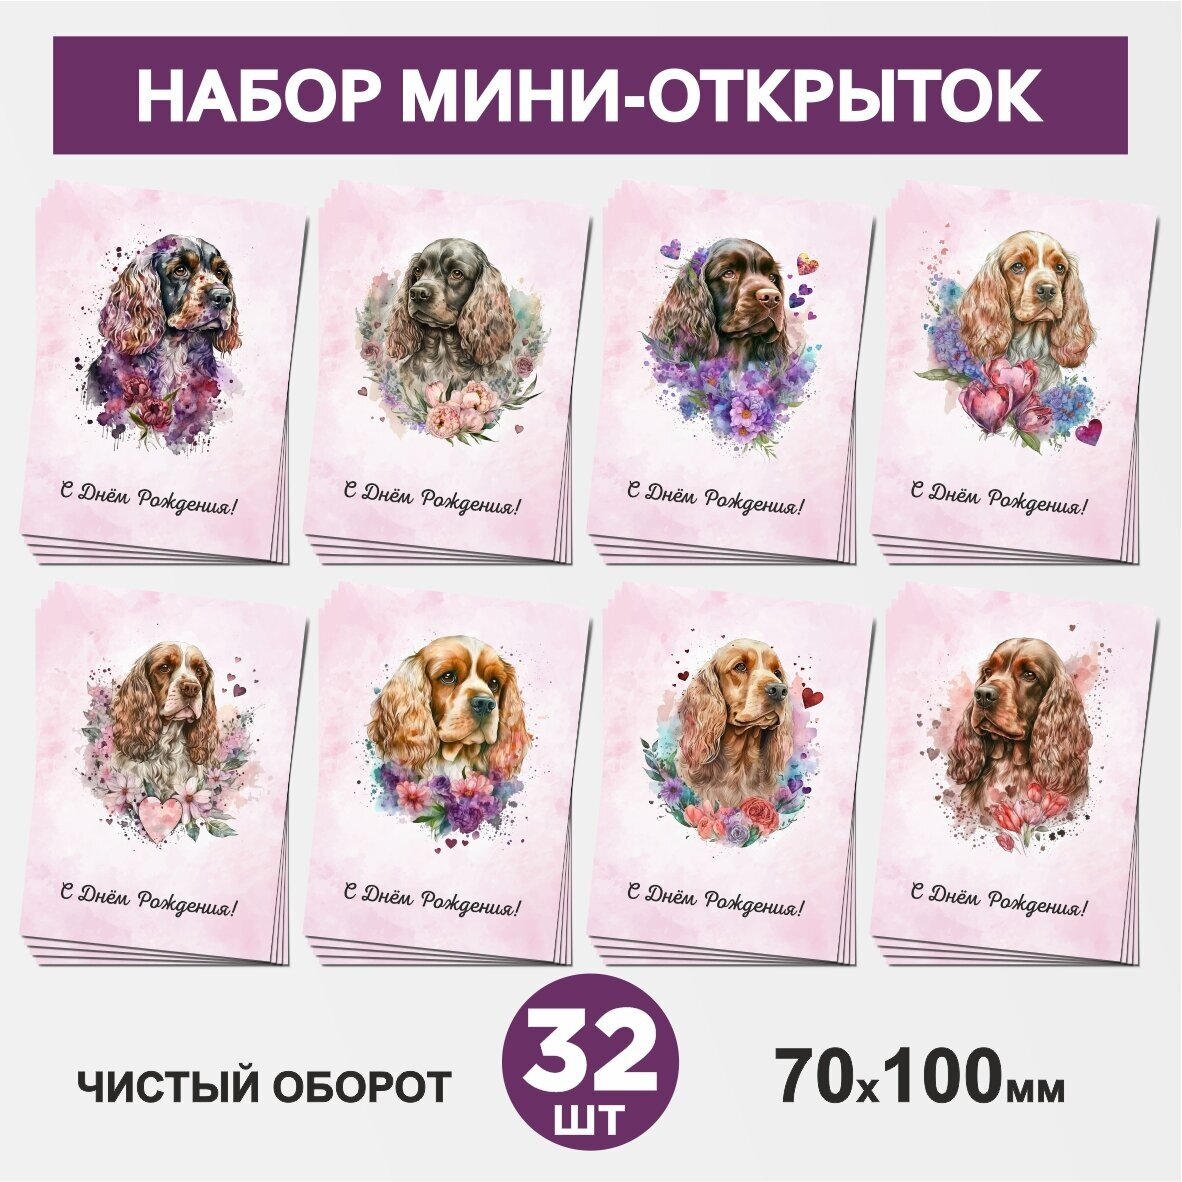 Набор мини-открыток 32 шт, 70х100мм, бирки, карточки, открытки для подарков на День Рождения - Собака №10.1, postcard_32_dog_set_10.1